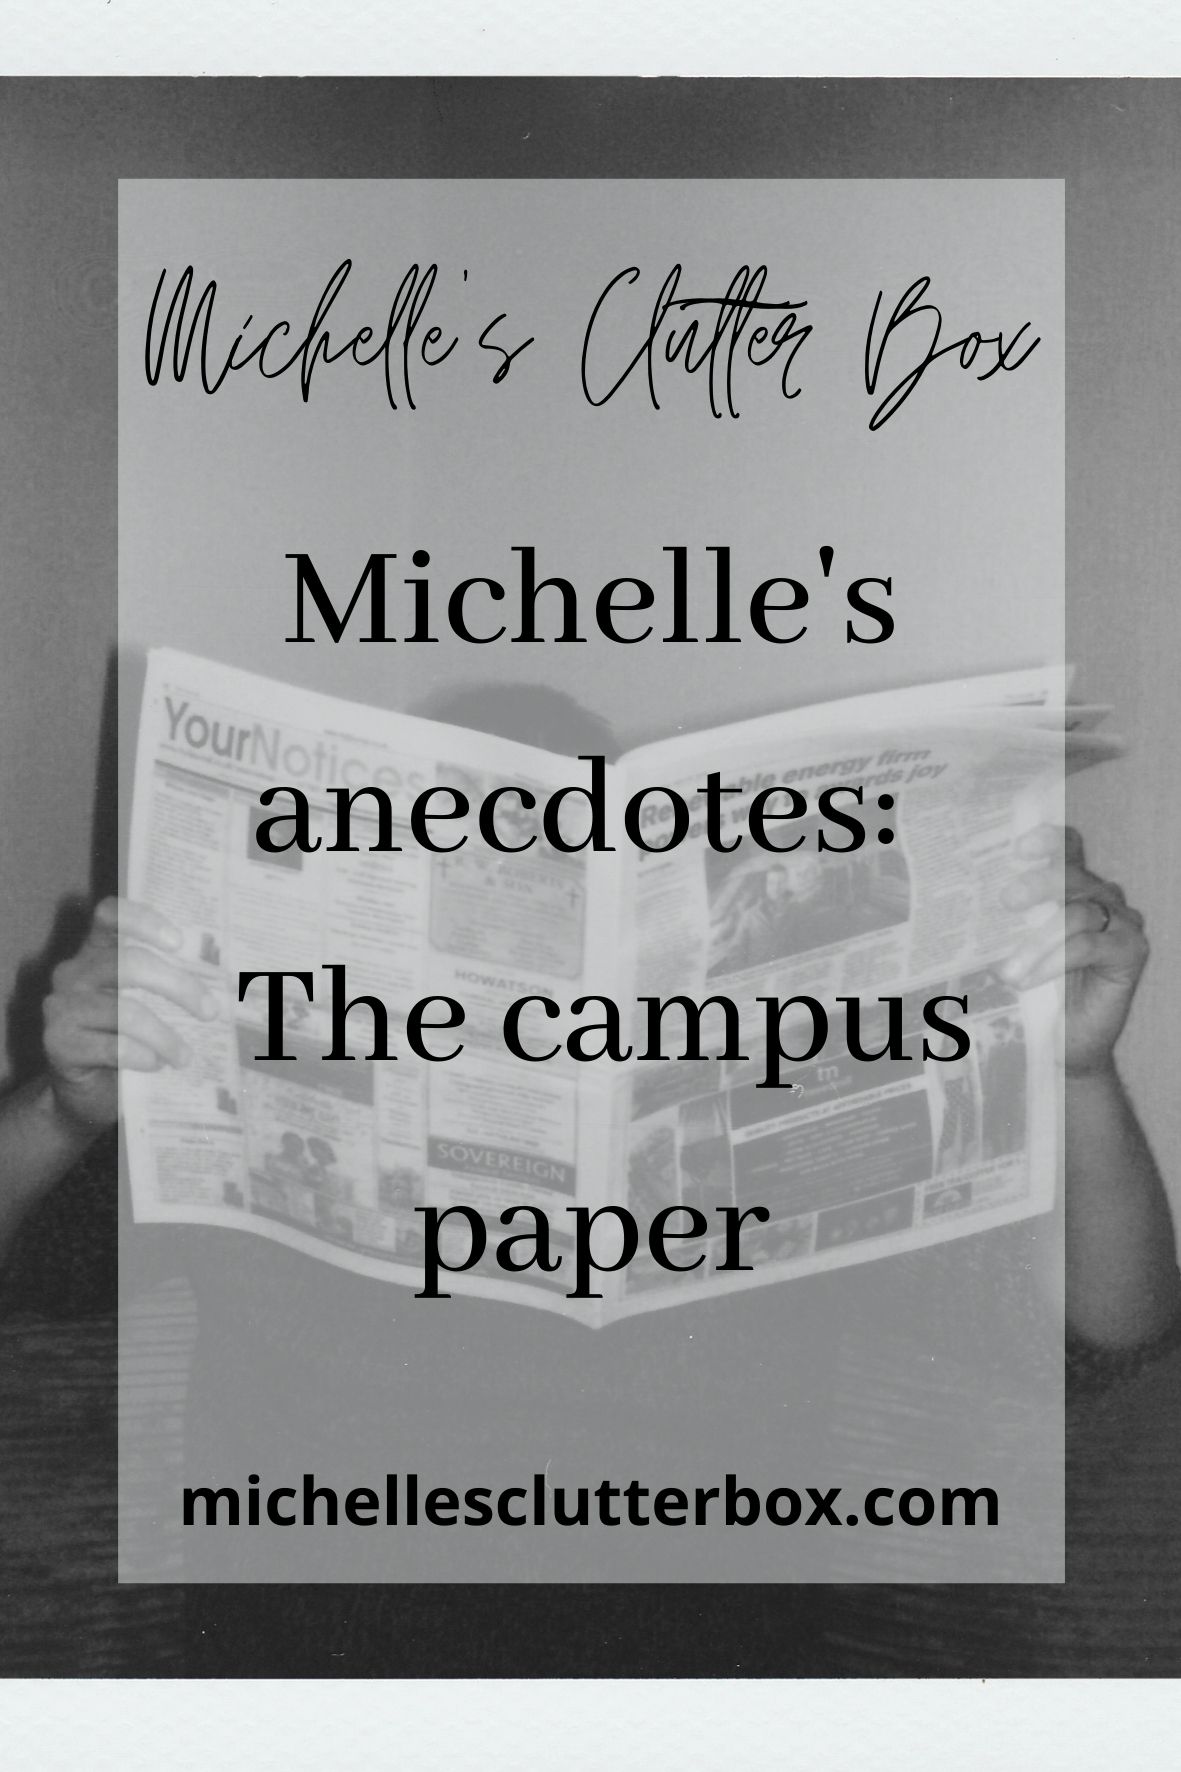 The campus paper